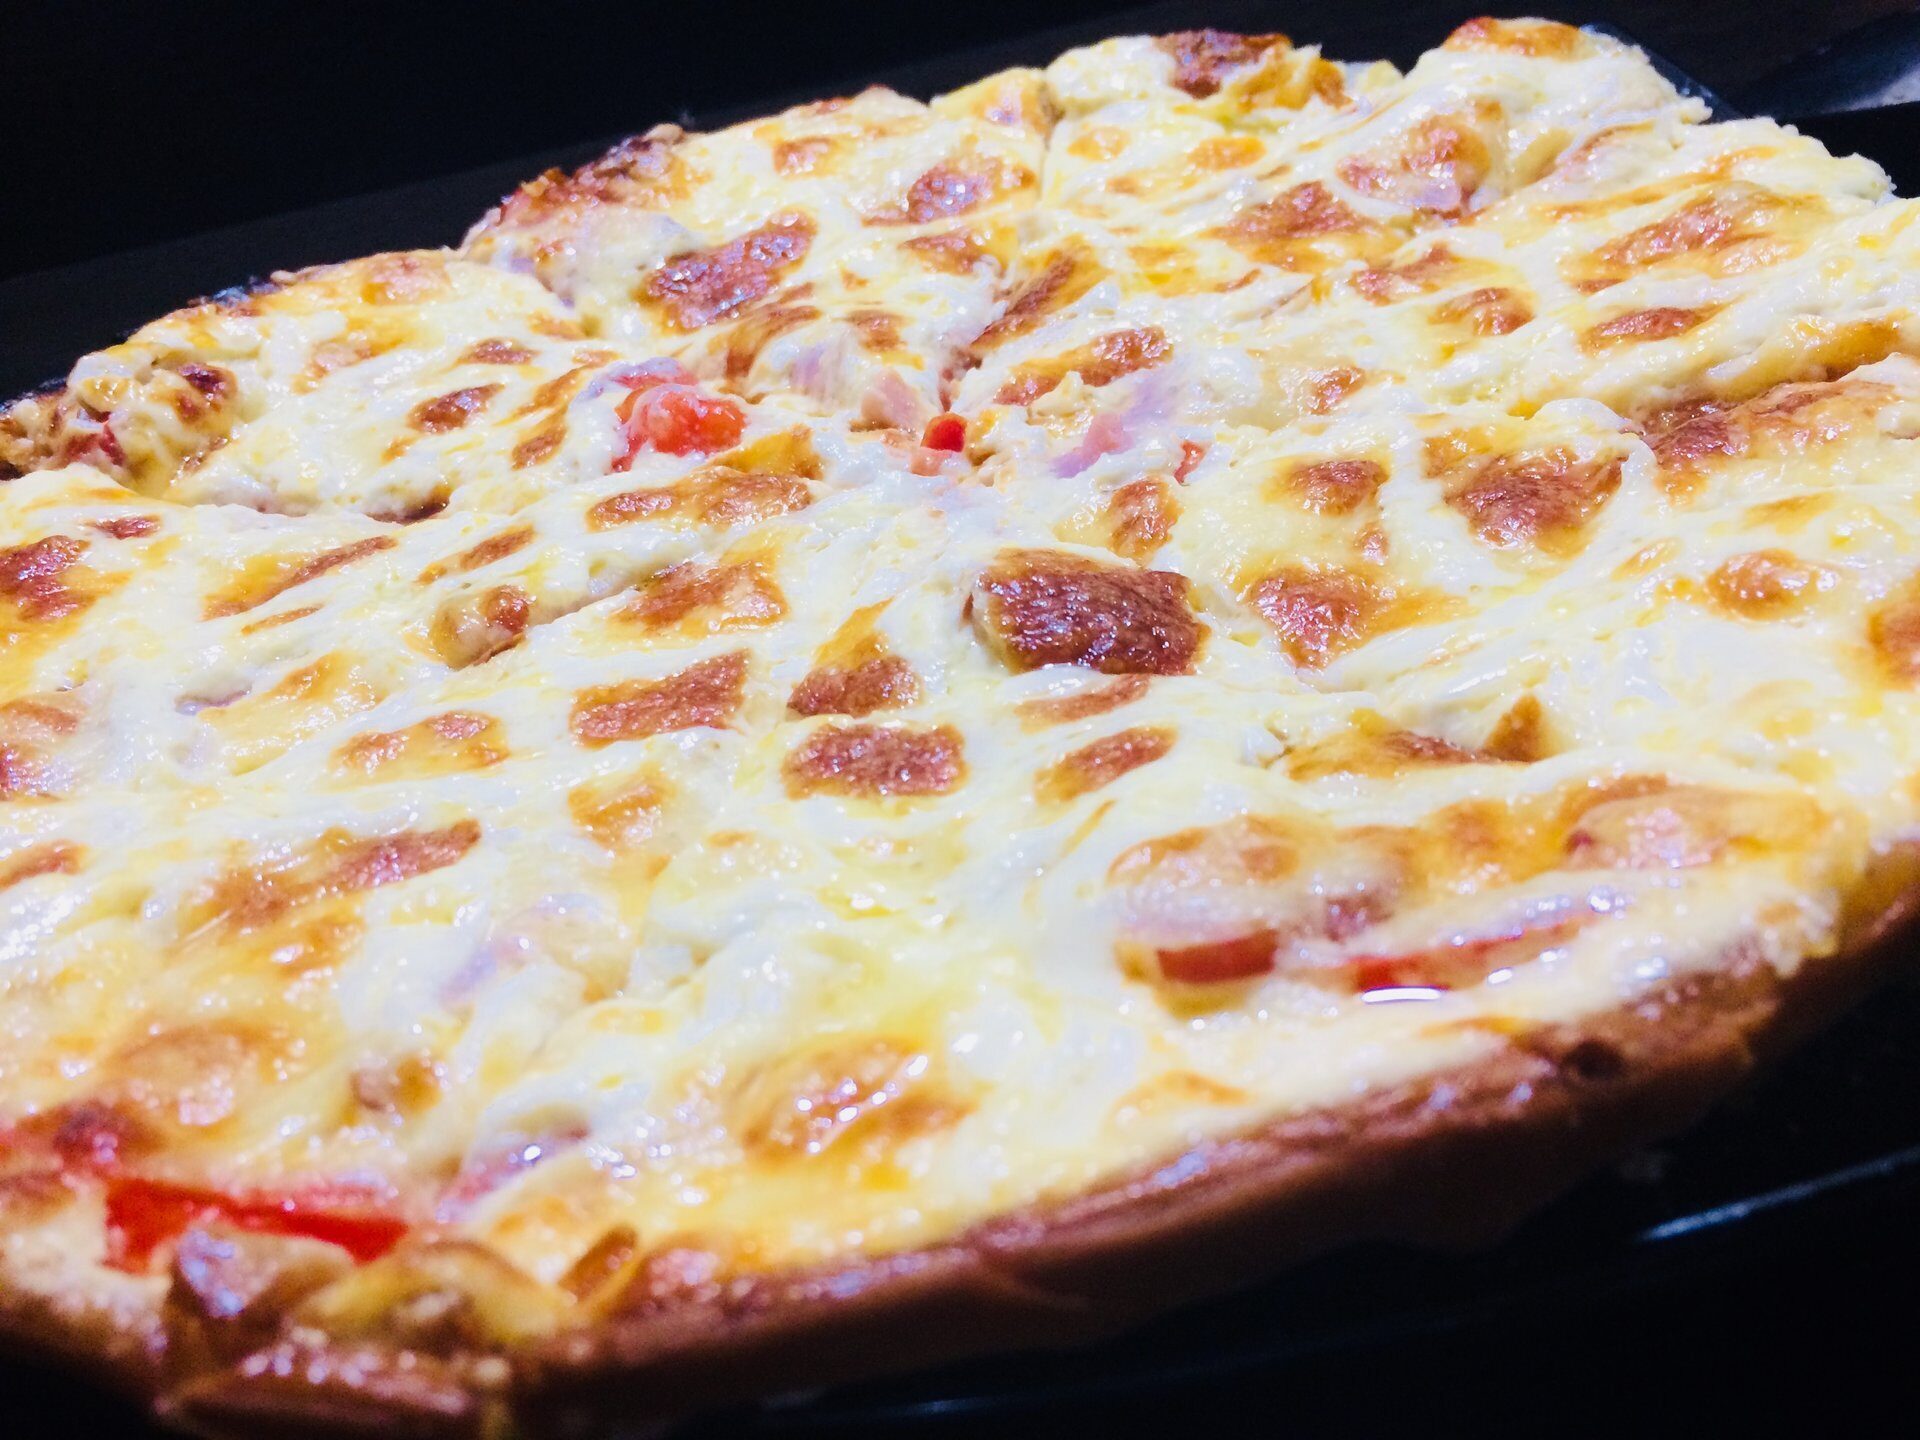 космическое питание сицилийская пицца фото 109